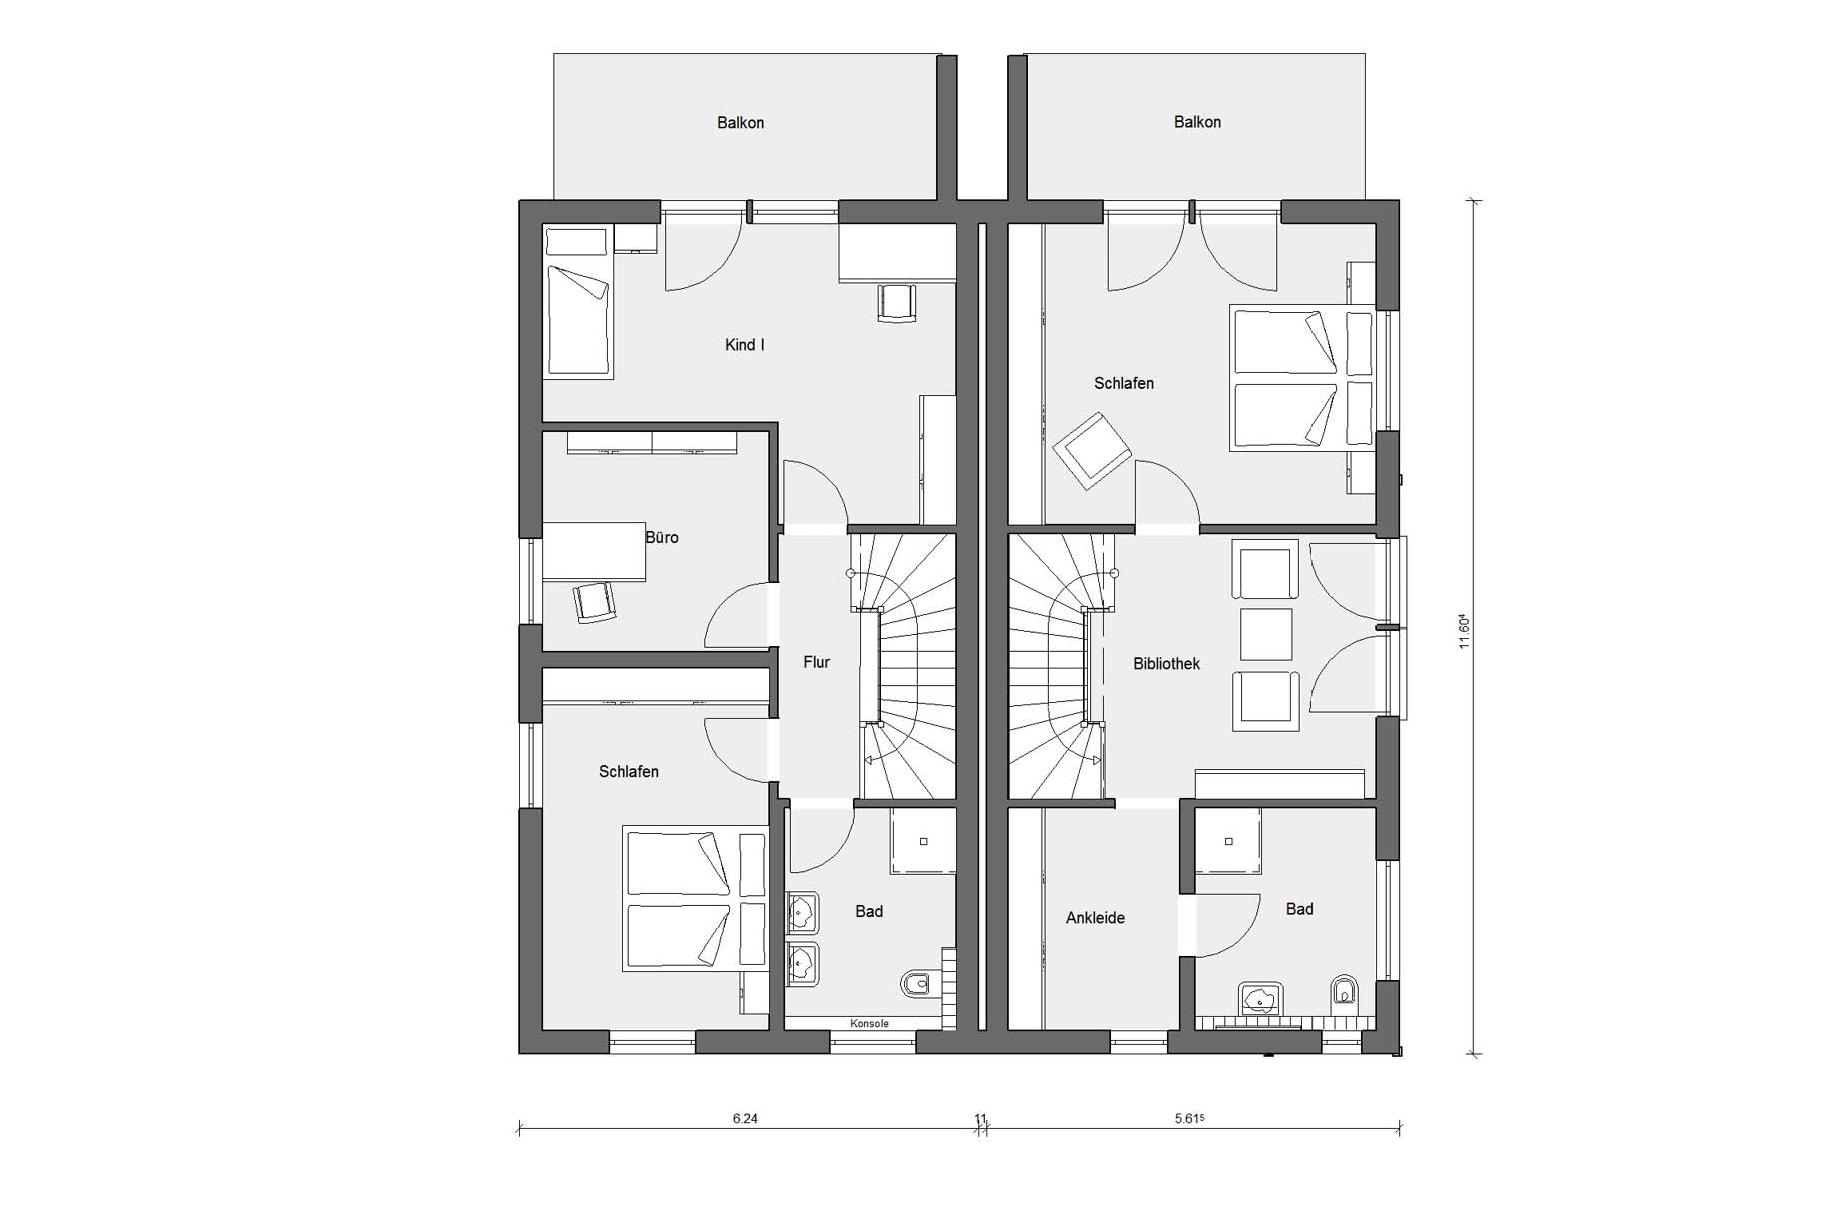 Plan d'étage premier étage D 20-176.1/ 20-158.1 Maison jumelée à trois étages